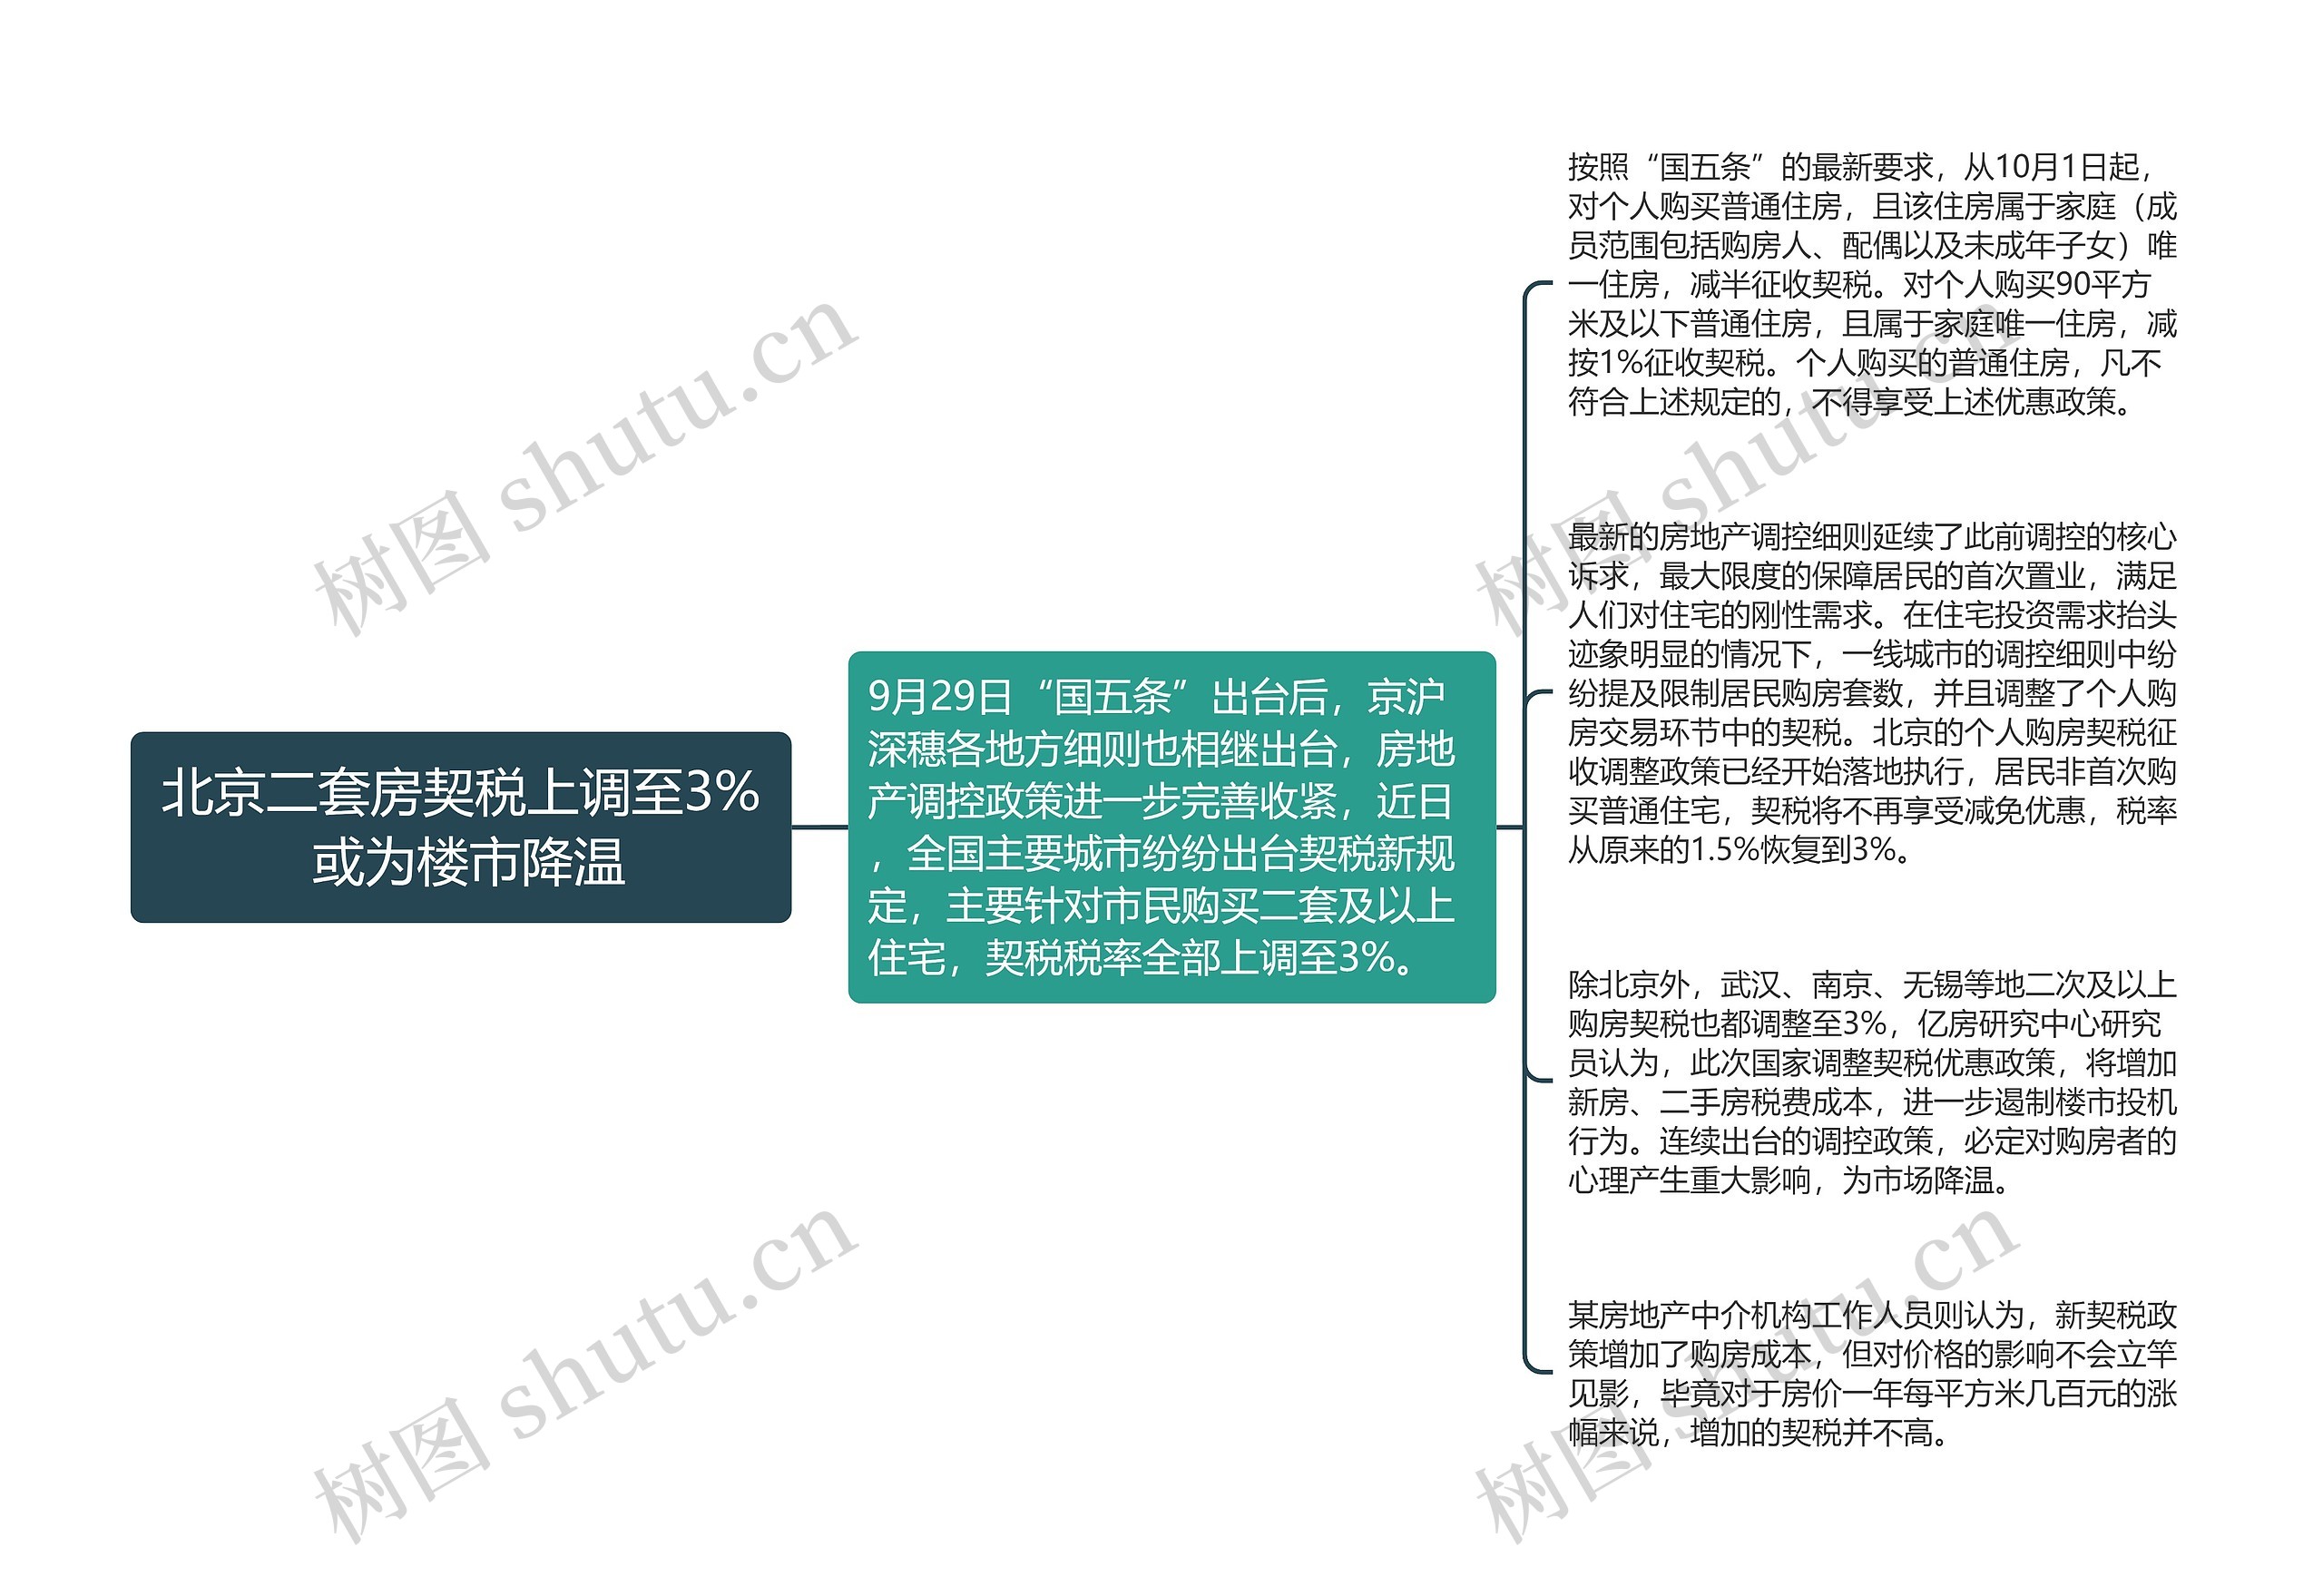 北京二套房契税上调至3% 或为楼市降温思维导图